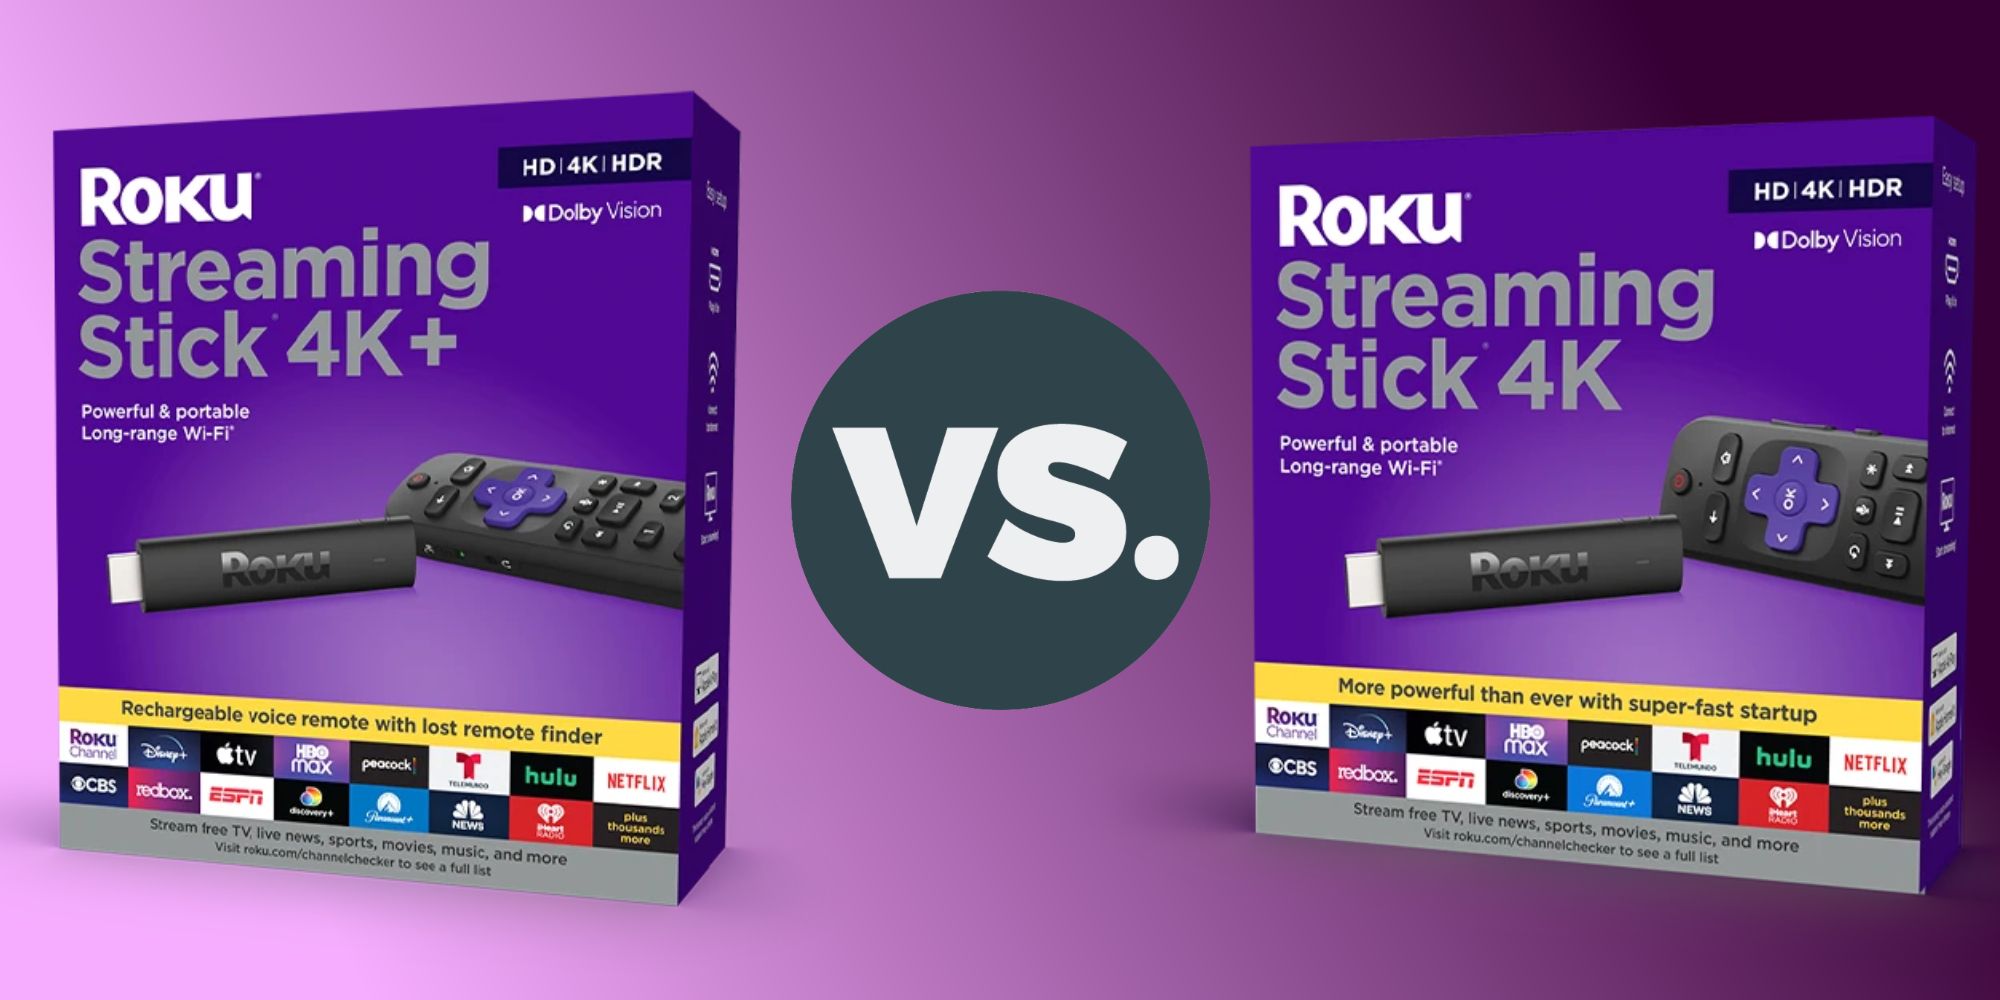 Roku Streaming Stick 4K+ and Roku Streaming Stick 4K